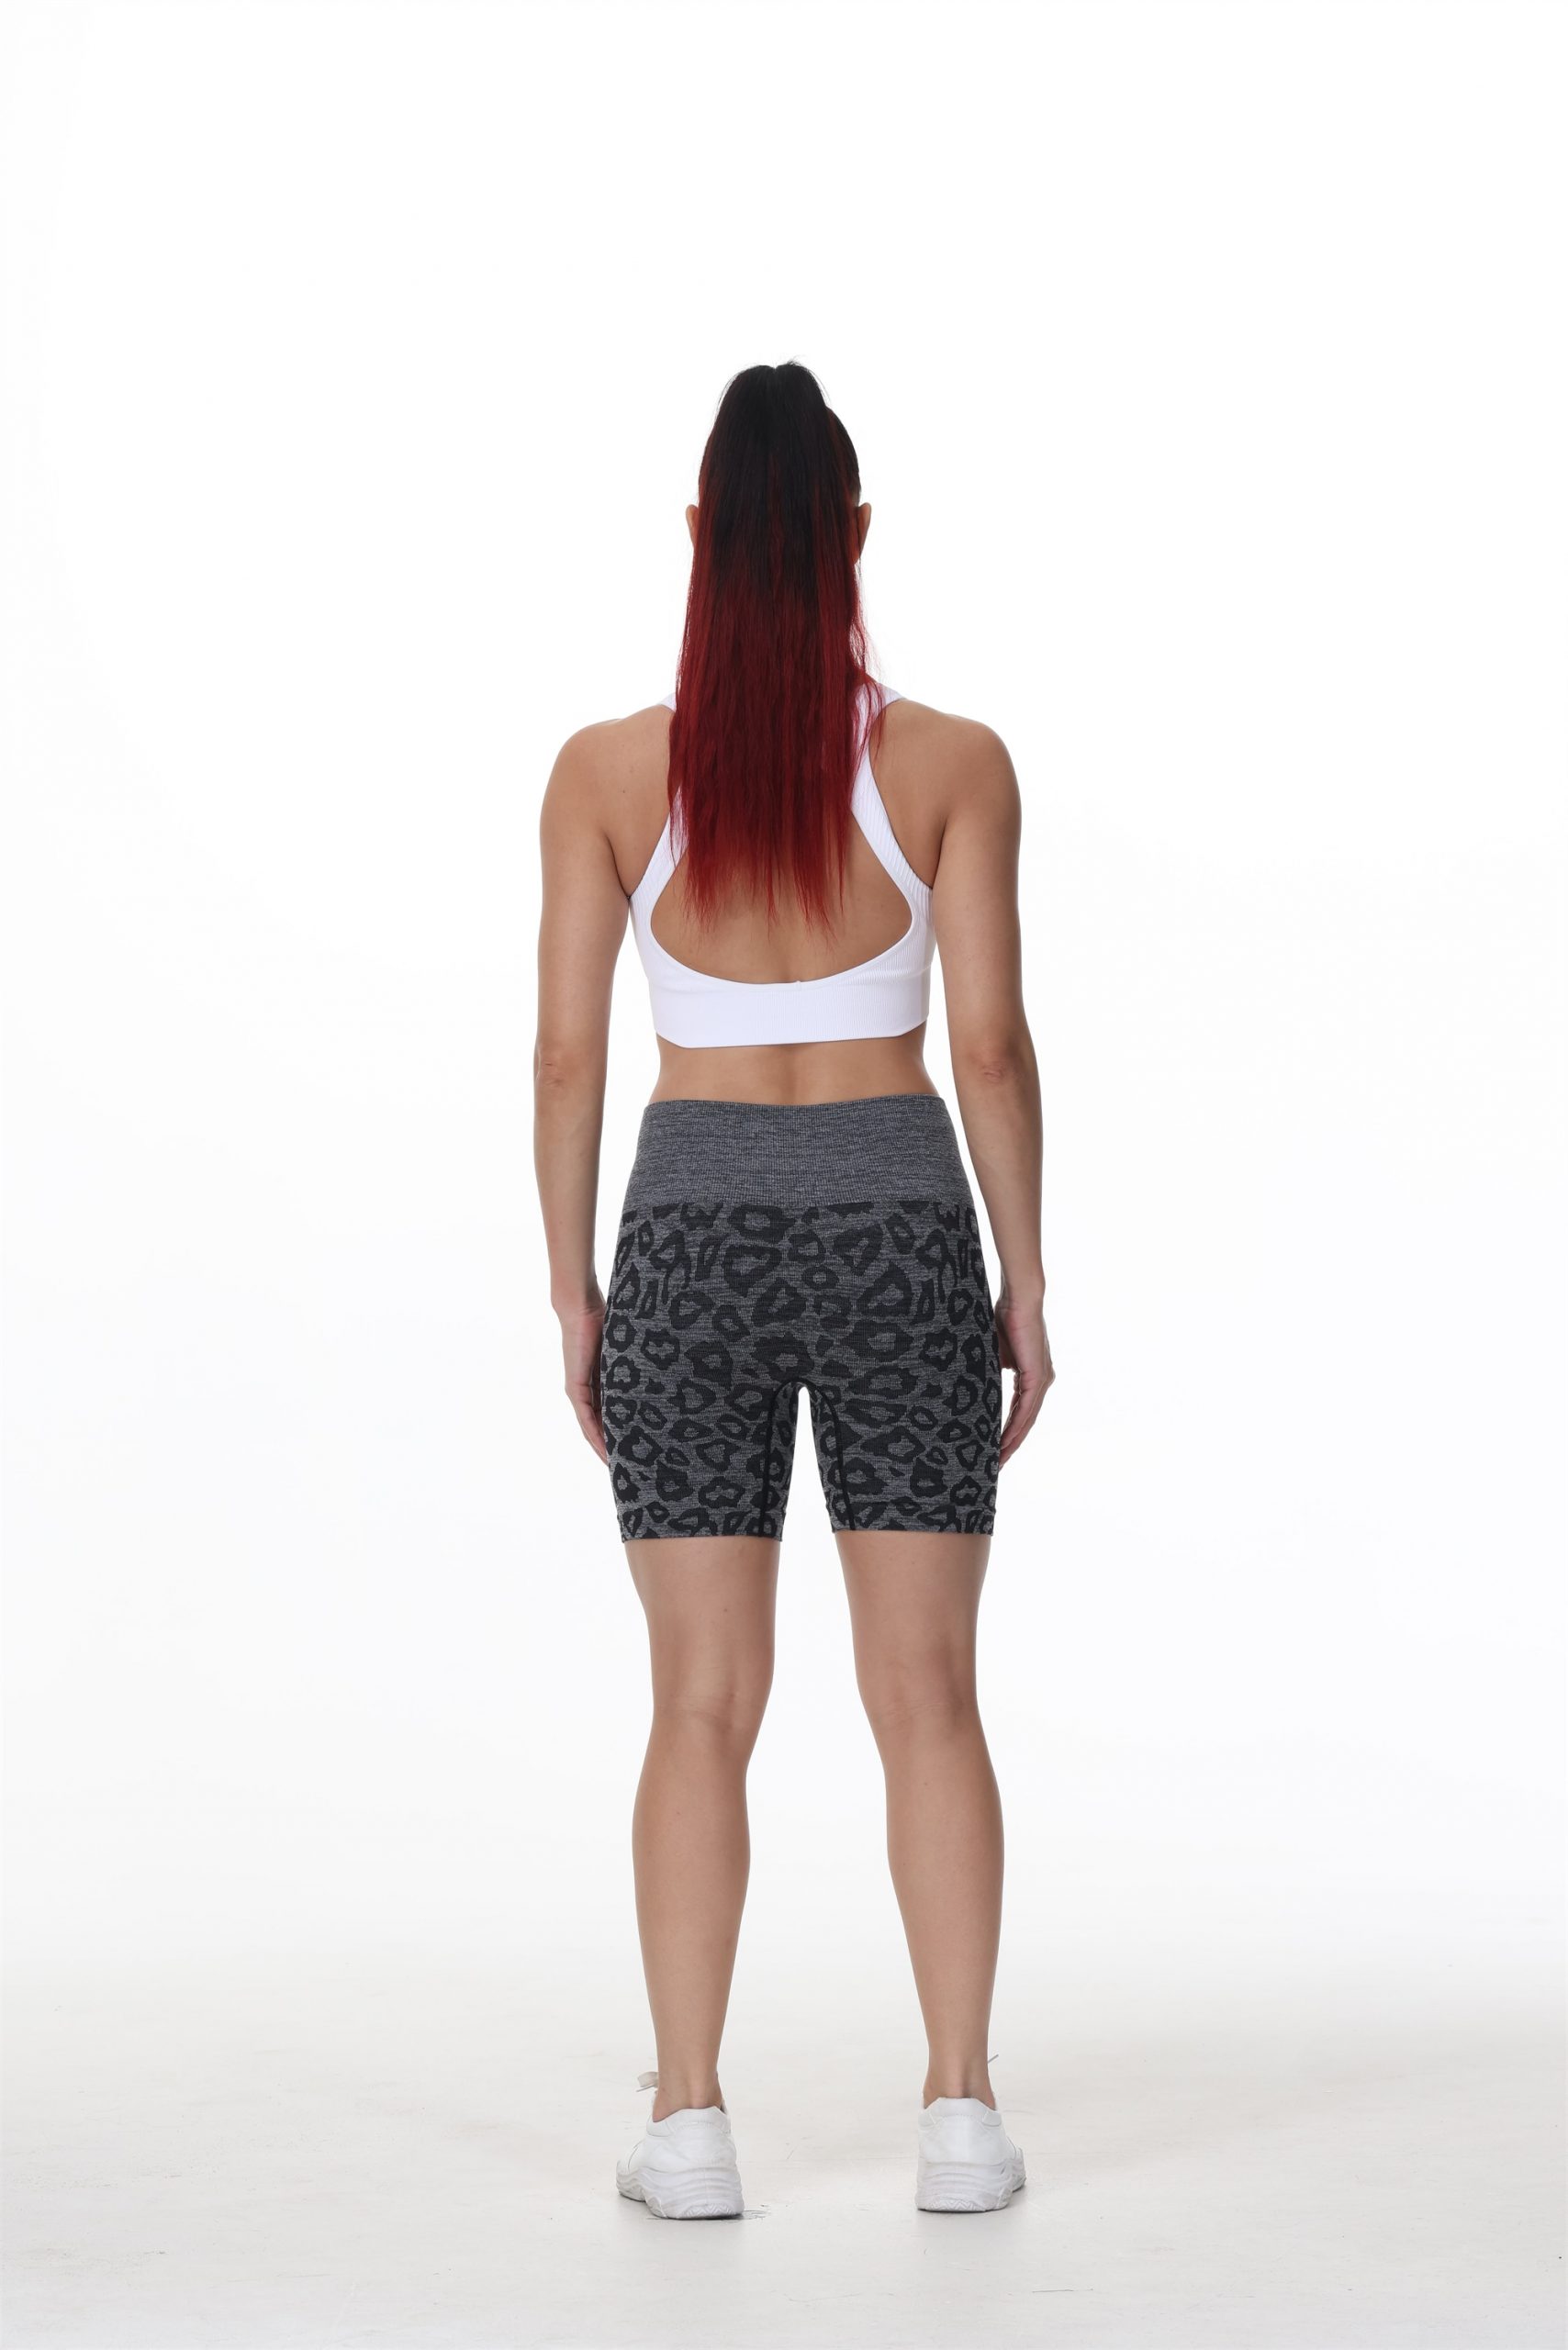 Summer Leopard Print Shorts Fitness Seamless Scrunch Butt Women Running Yoga Shorts High Waist GYM Shorts Bicker Sport Shorts